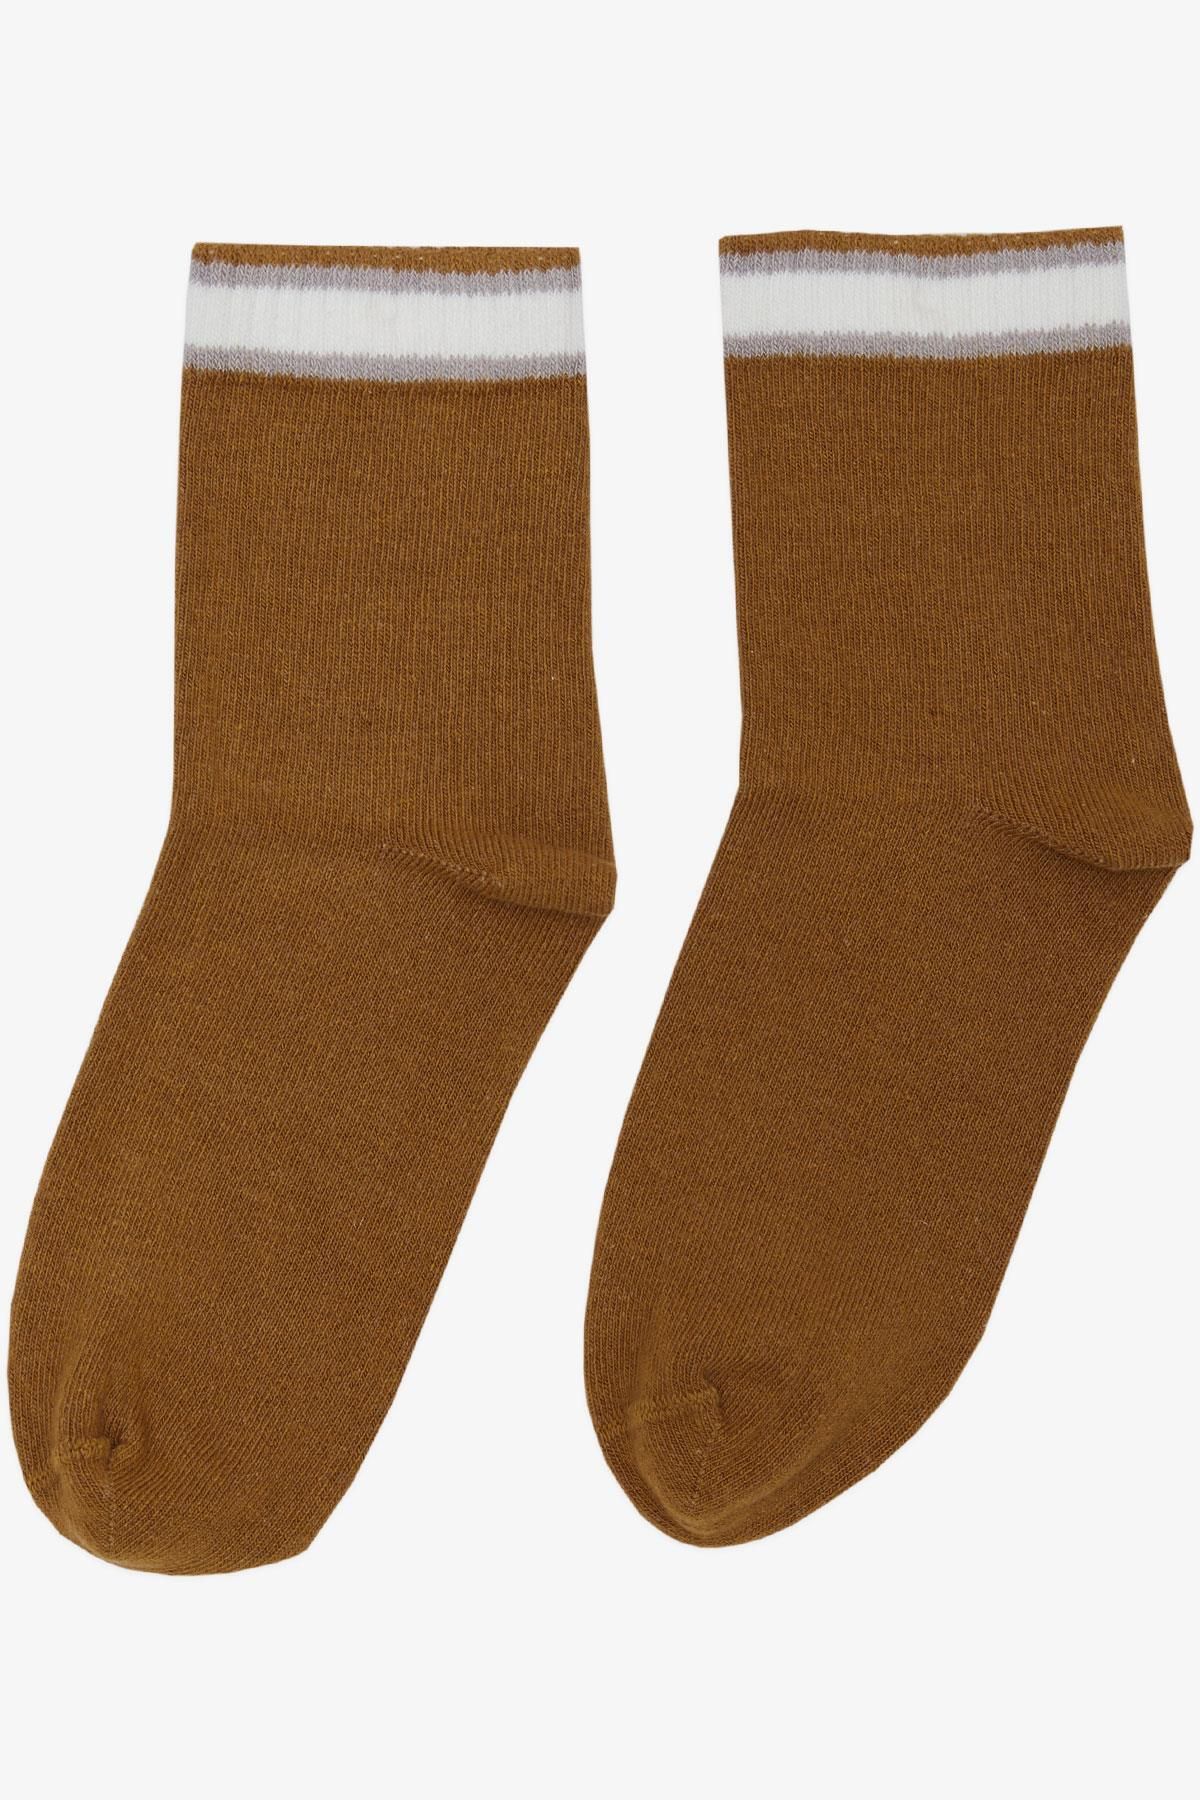 Katamino Artı Kız Çocuk Soket Çorap Çizgili 1-14 Yaş, Hardal Sarı